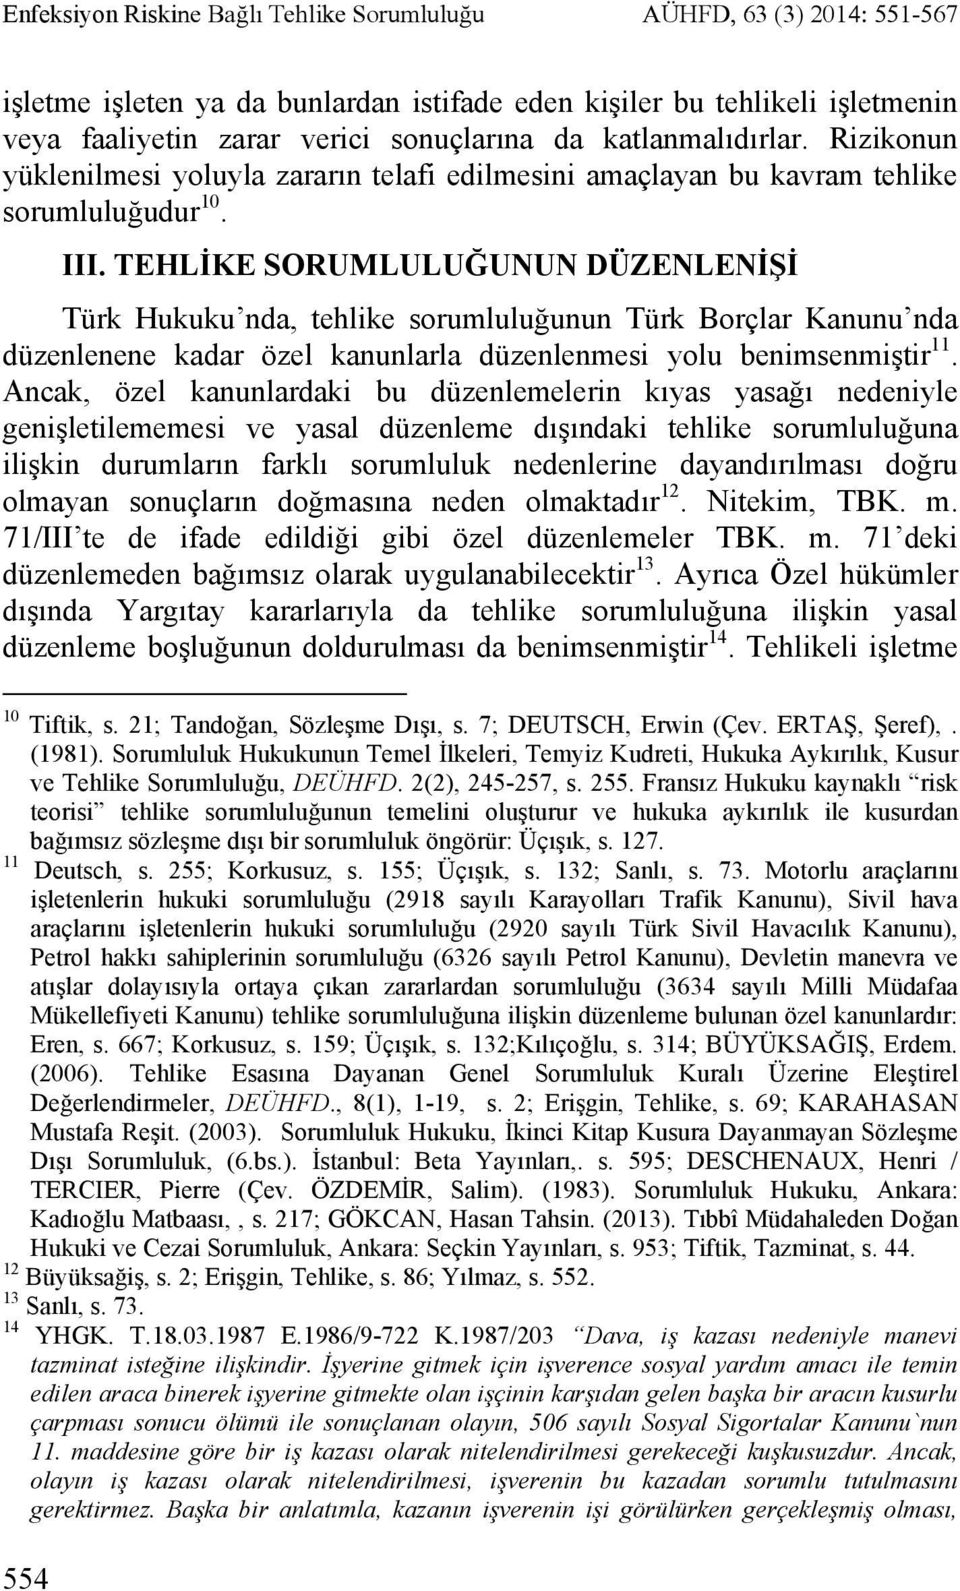 TEHLİKE SORUMLULUĞUNUN DÜZENLENİŞİ Türk Hukuku nda, tehlike sorumluluğunun Türk Borçlar Kanunu nda düzenlenene kadar özel kanunlarla düzenlenmesi yolu benimsenmiştir 11.